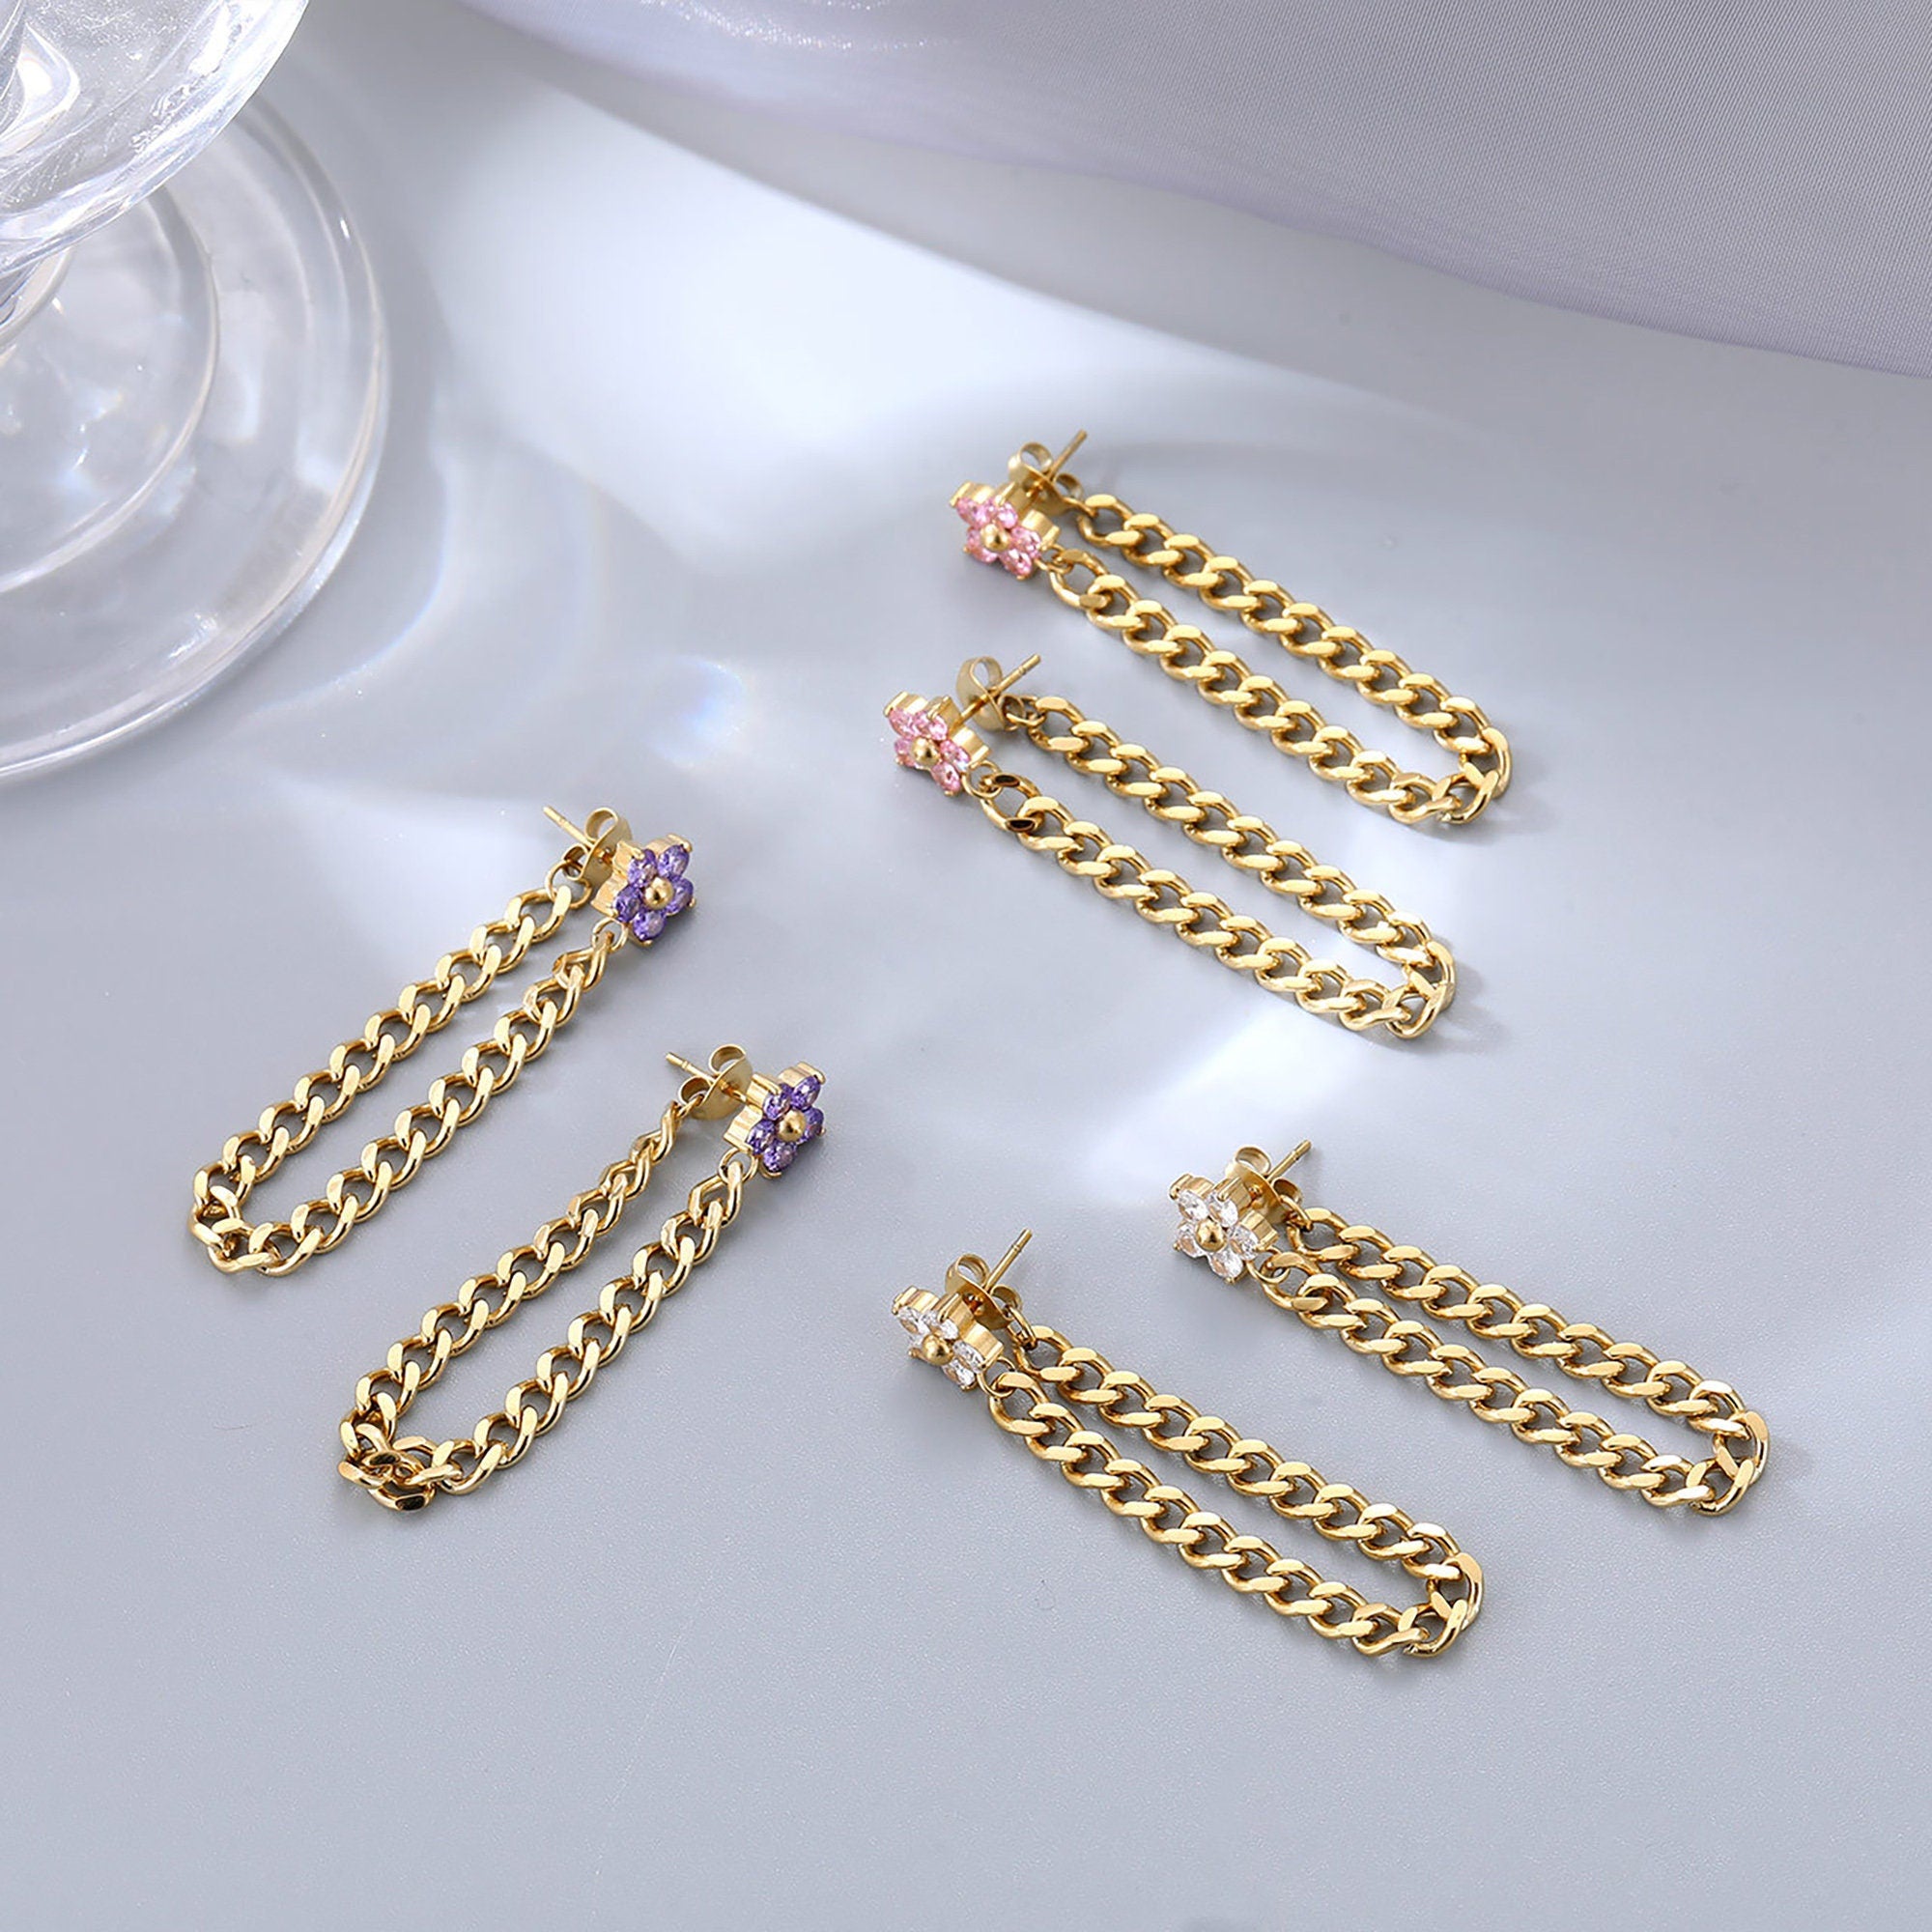 22K Ladies Gold Hanging Earrings at Rs 40490/pair | सोने की बालियां in  Gurugram | ID: 21710196273